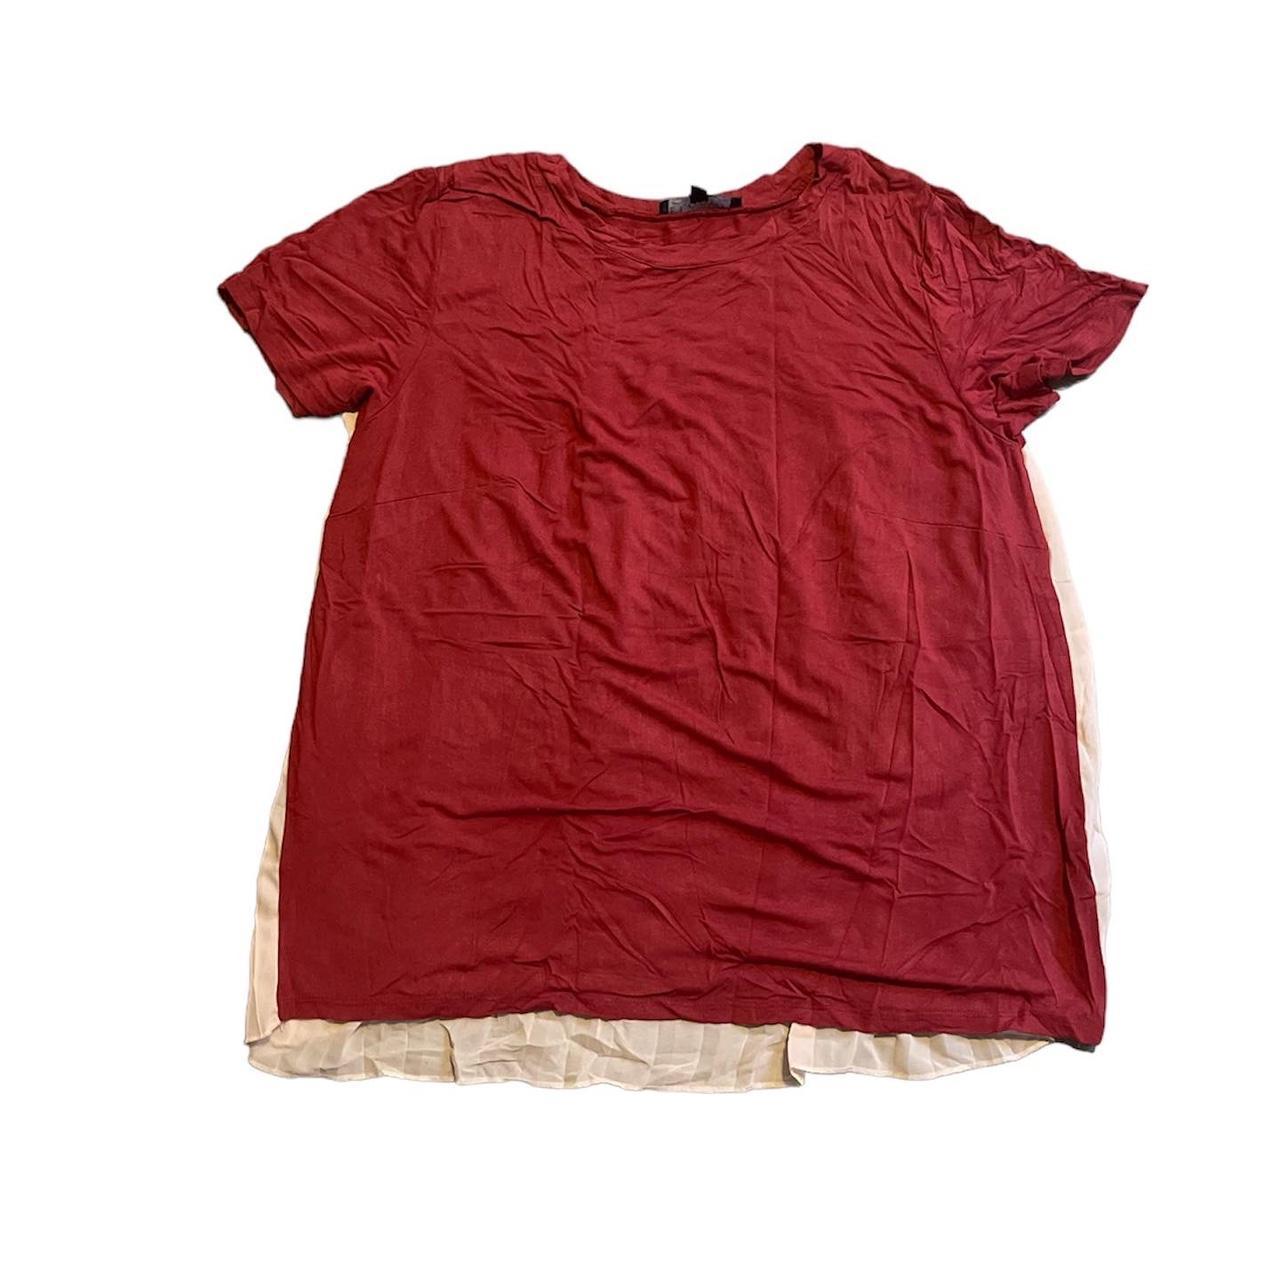 Eloquii Women's T-shirt